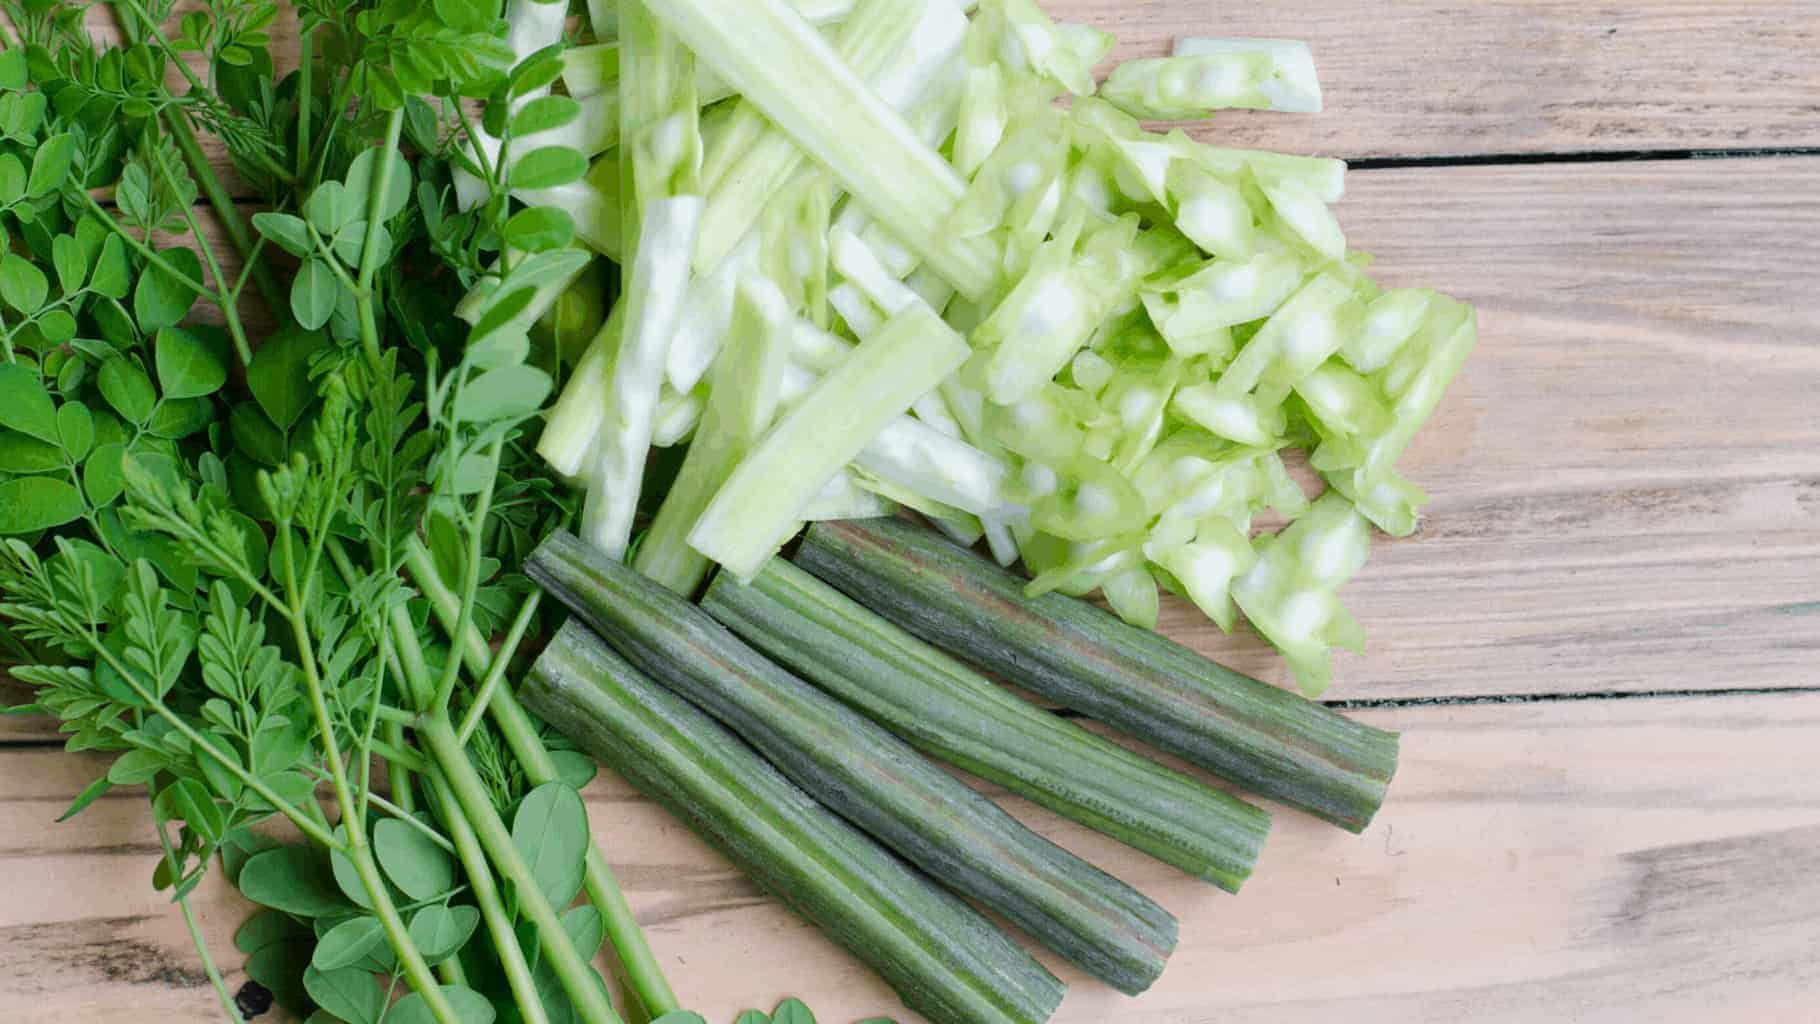 Moringa-leaves-eat-drumsticks-vegetable